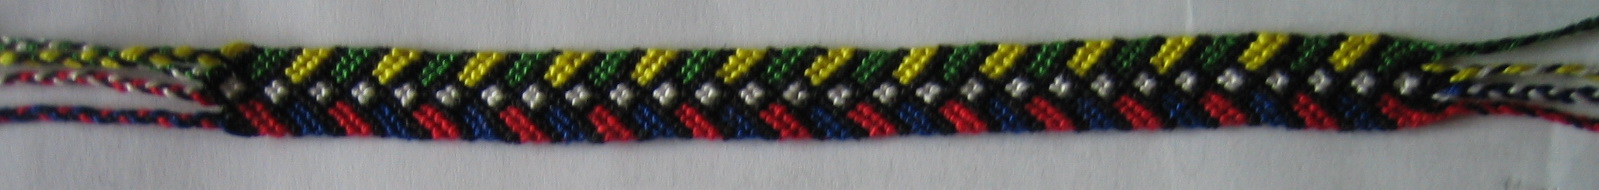 friendship bracelet chevron with squares